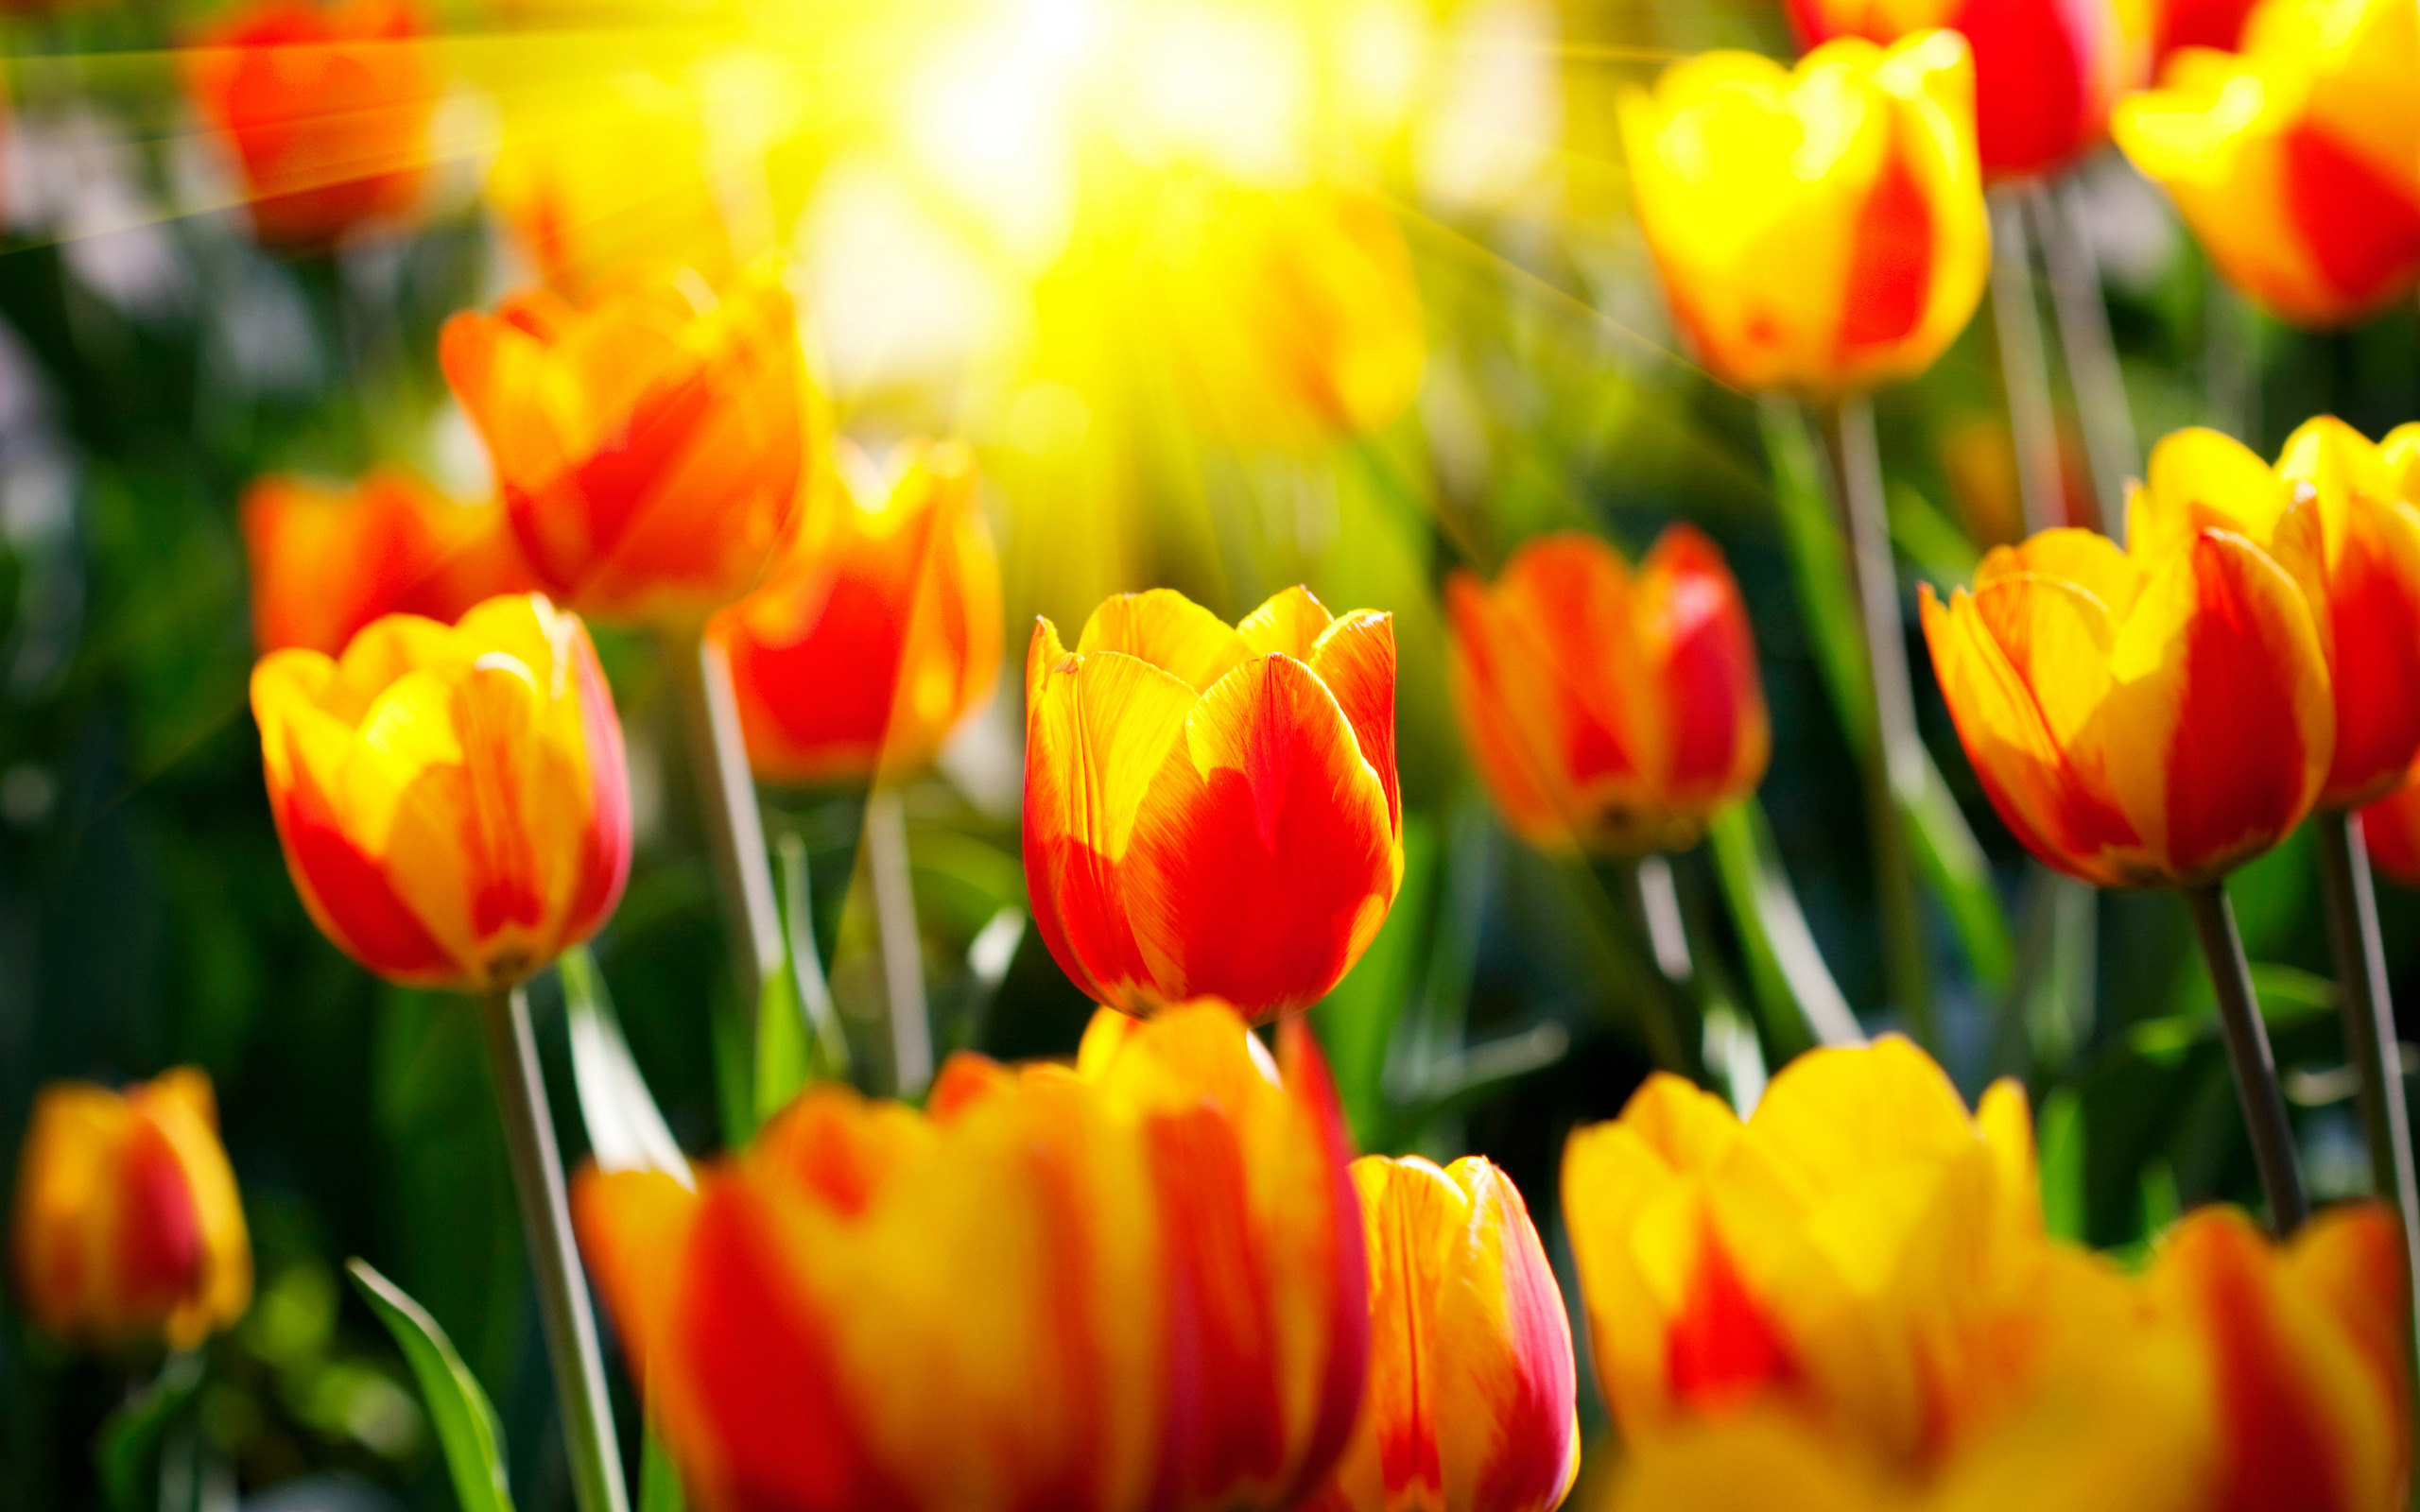 Обои с тюльпанами на телефон. Цветы тюльпаны. Яркие цветы. Весенние тюльпаны. Красивые яркие цветы.